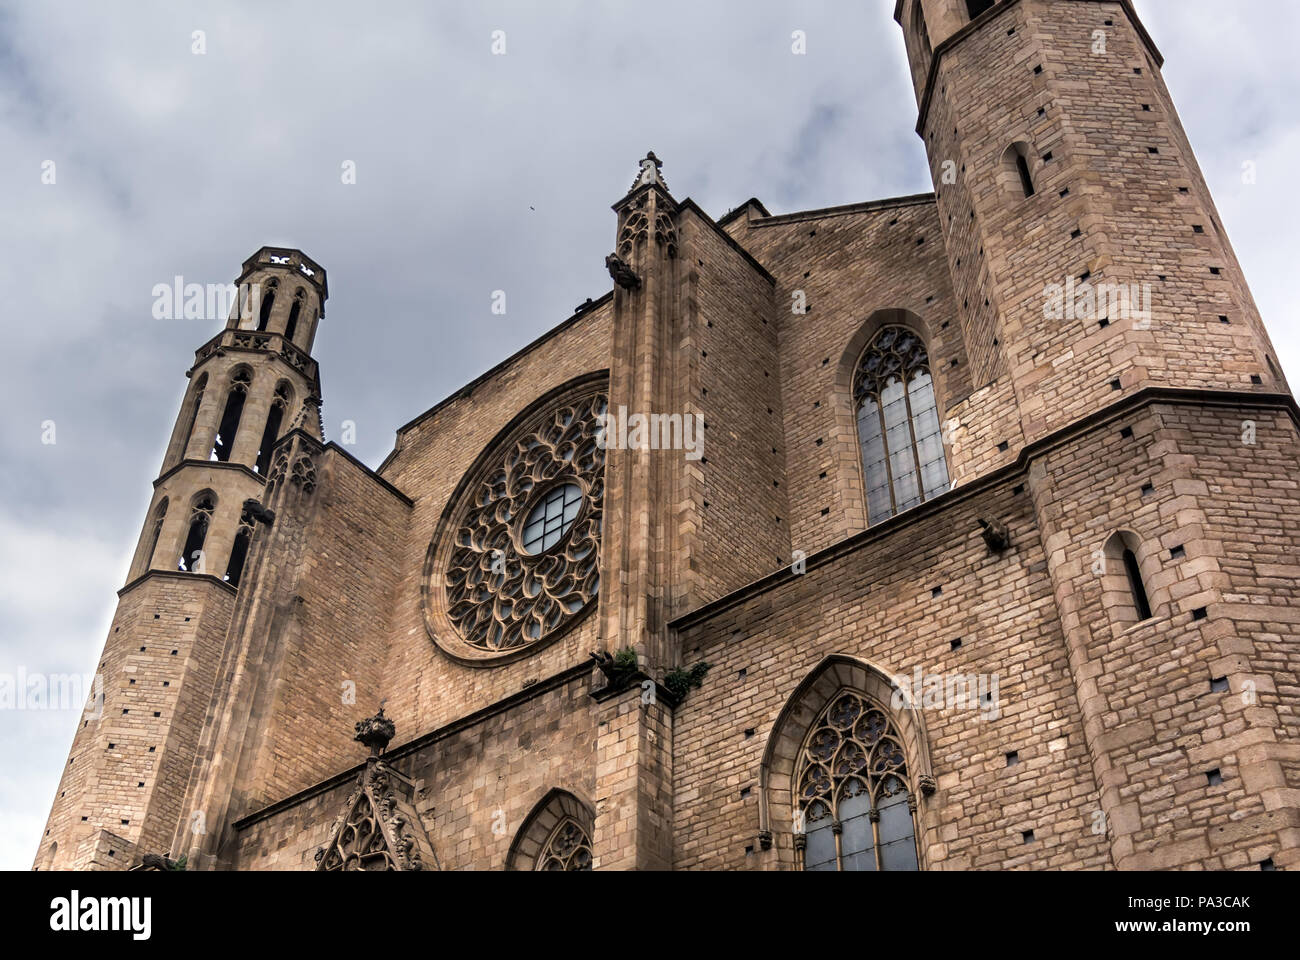 Le west end et rose du gothique catalan l'église Santa Maria del Mar à Barcelone, également connu sous le nom de "cathédrale de La Ribera' Banque D'Images